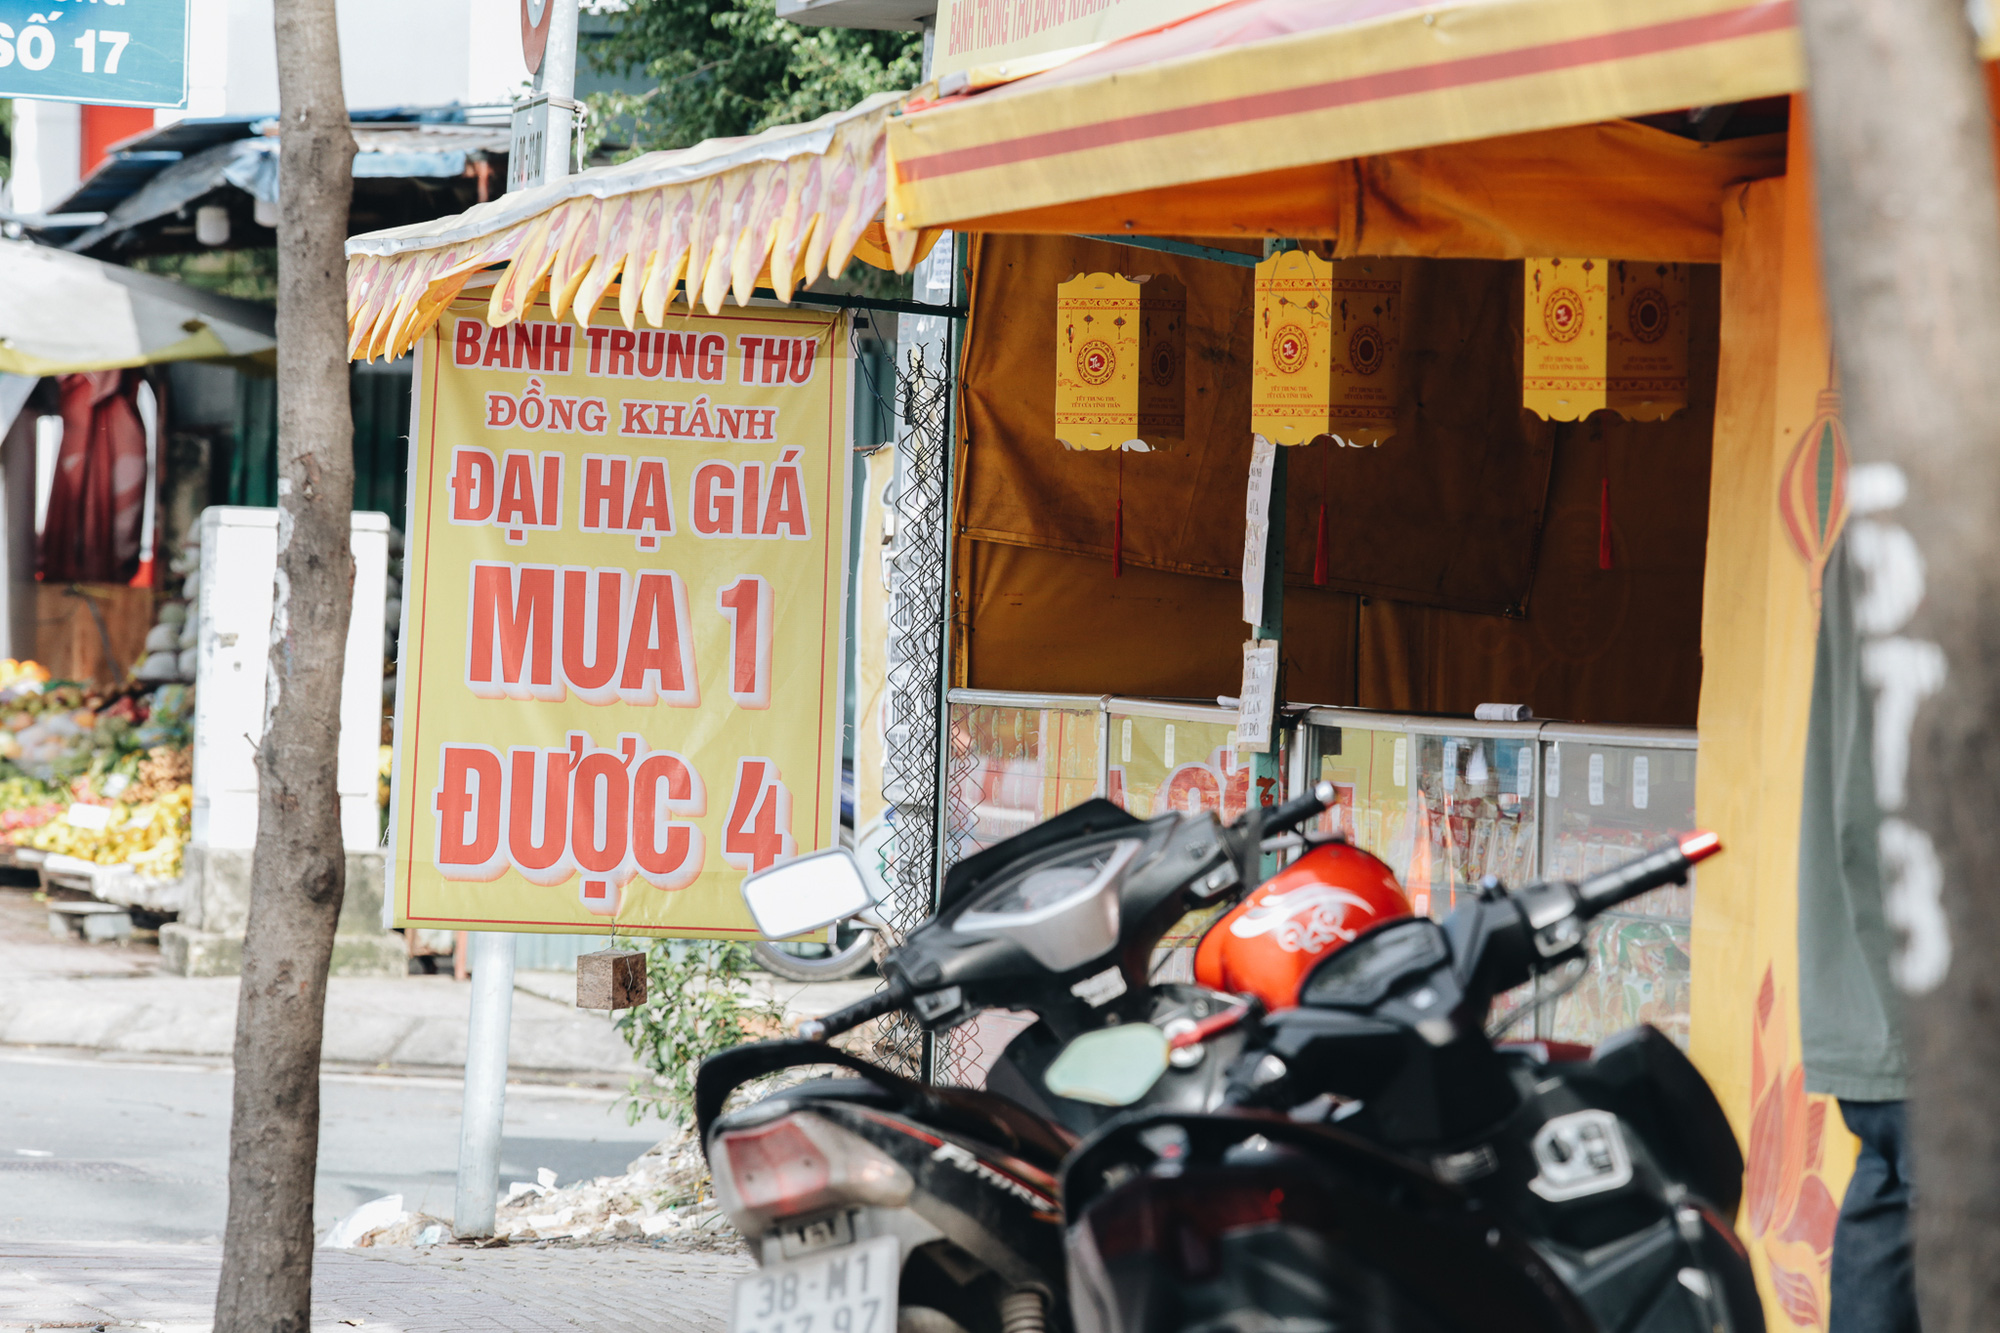 Bánh Trung thu lề đường ở Sài Gòn: Mua 1 tặng 3 nhưng giá bằng 4 cái - Ảnh 5.